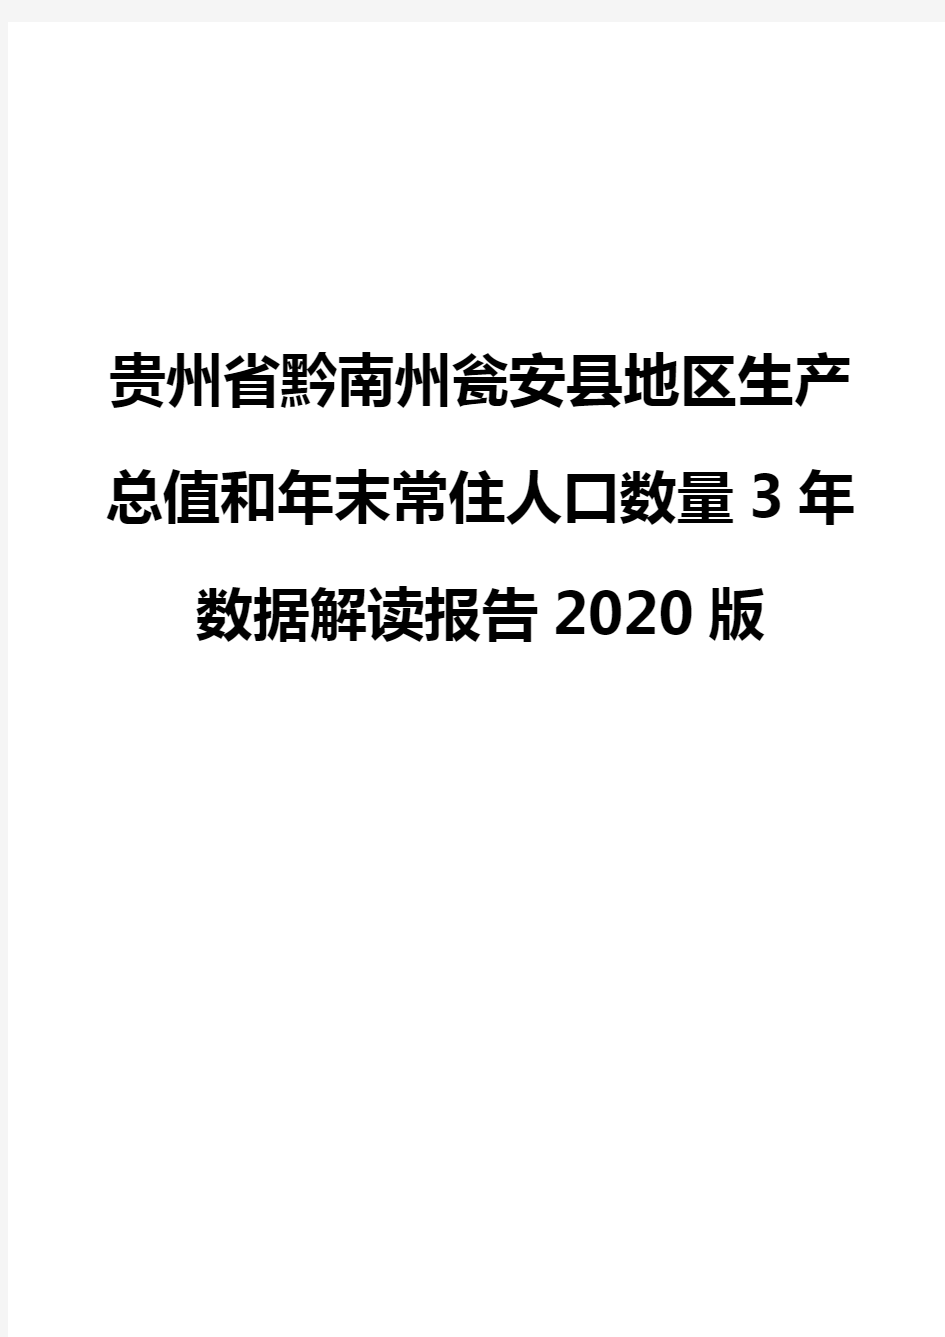 贵州省黔南州瓮安县地区生产总值和年末常住人口数量3年数据解读报告2020版